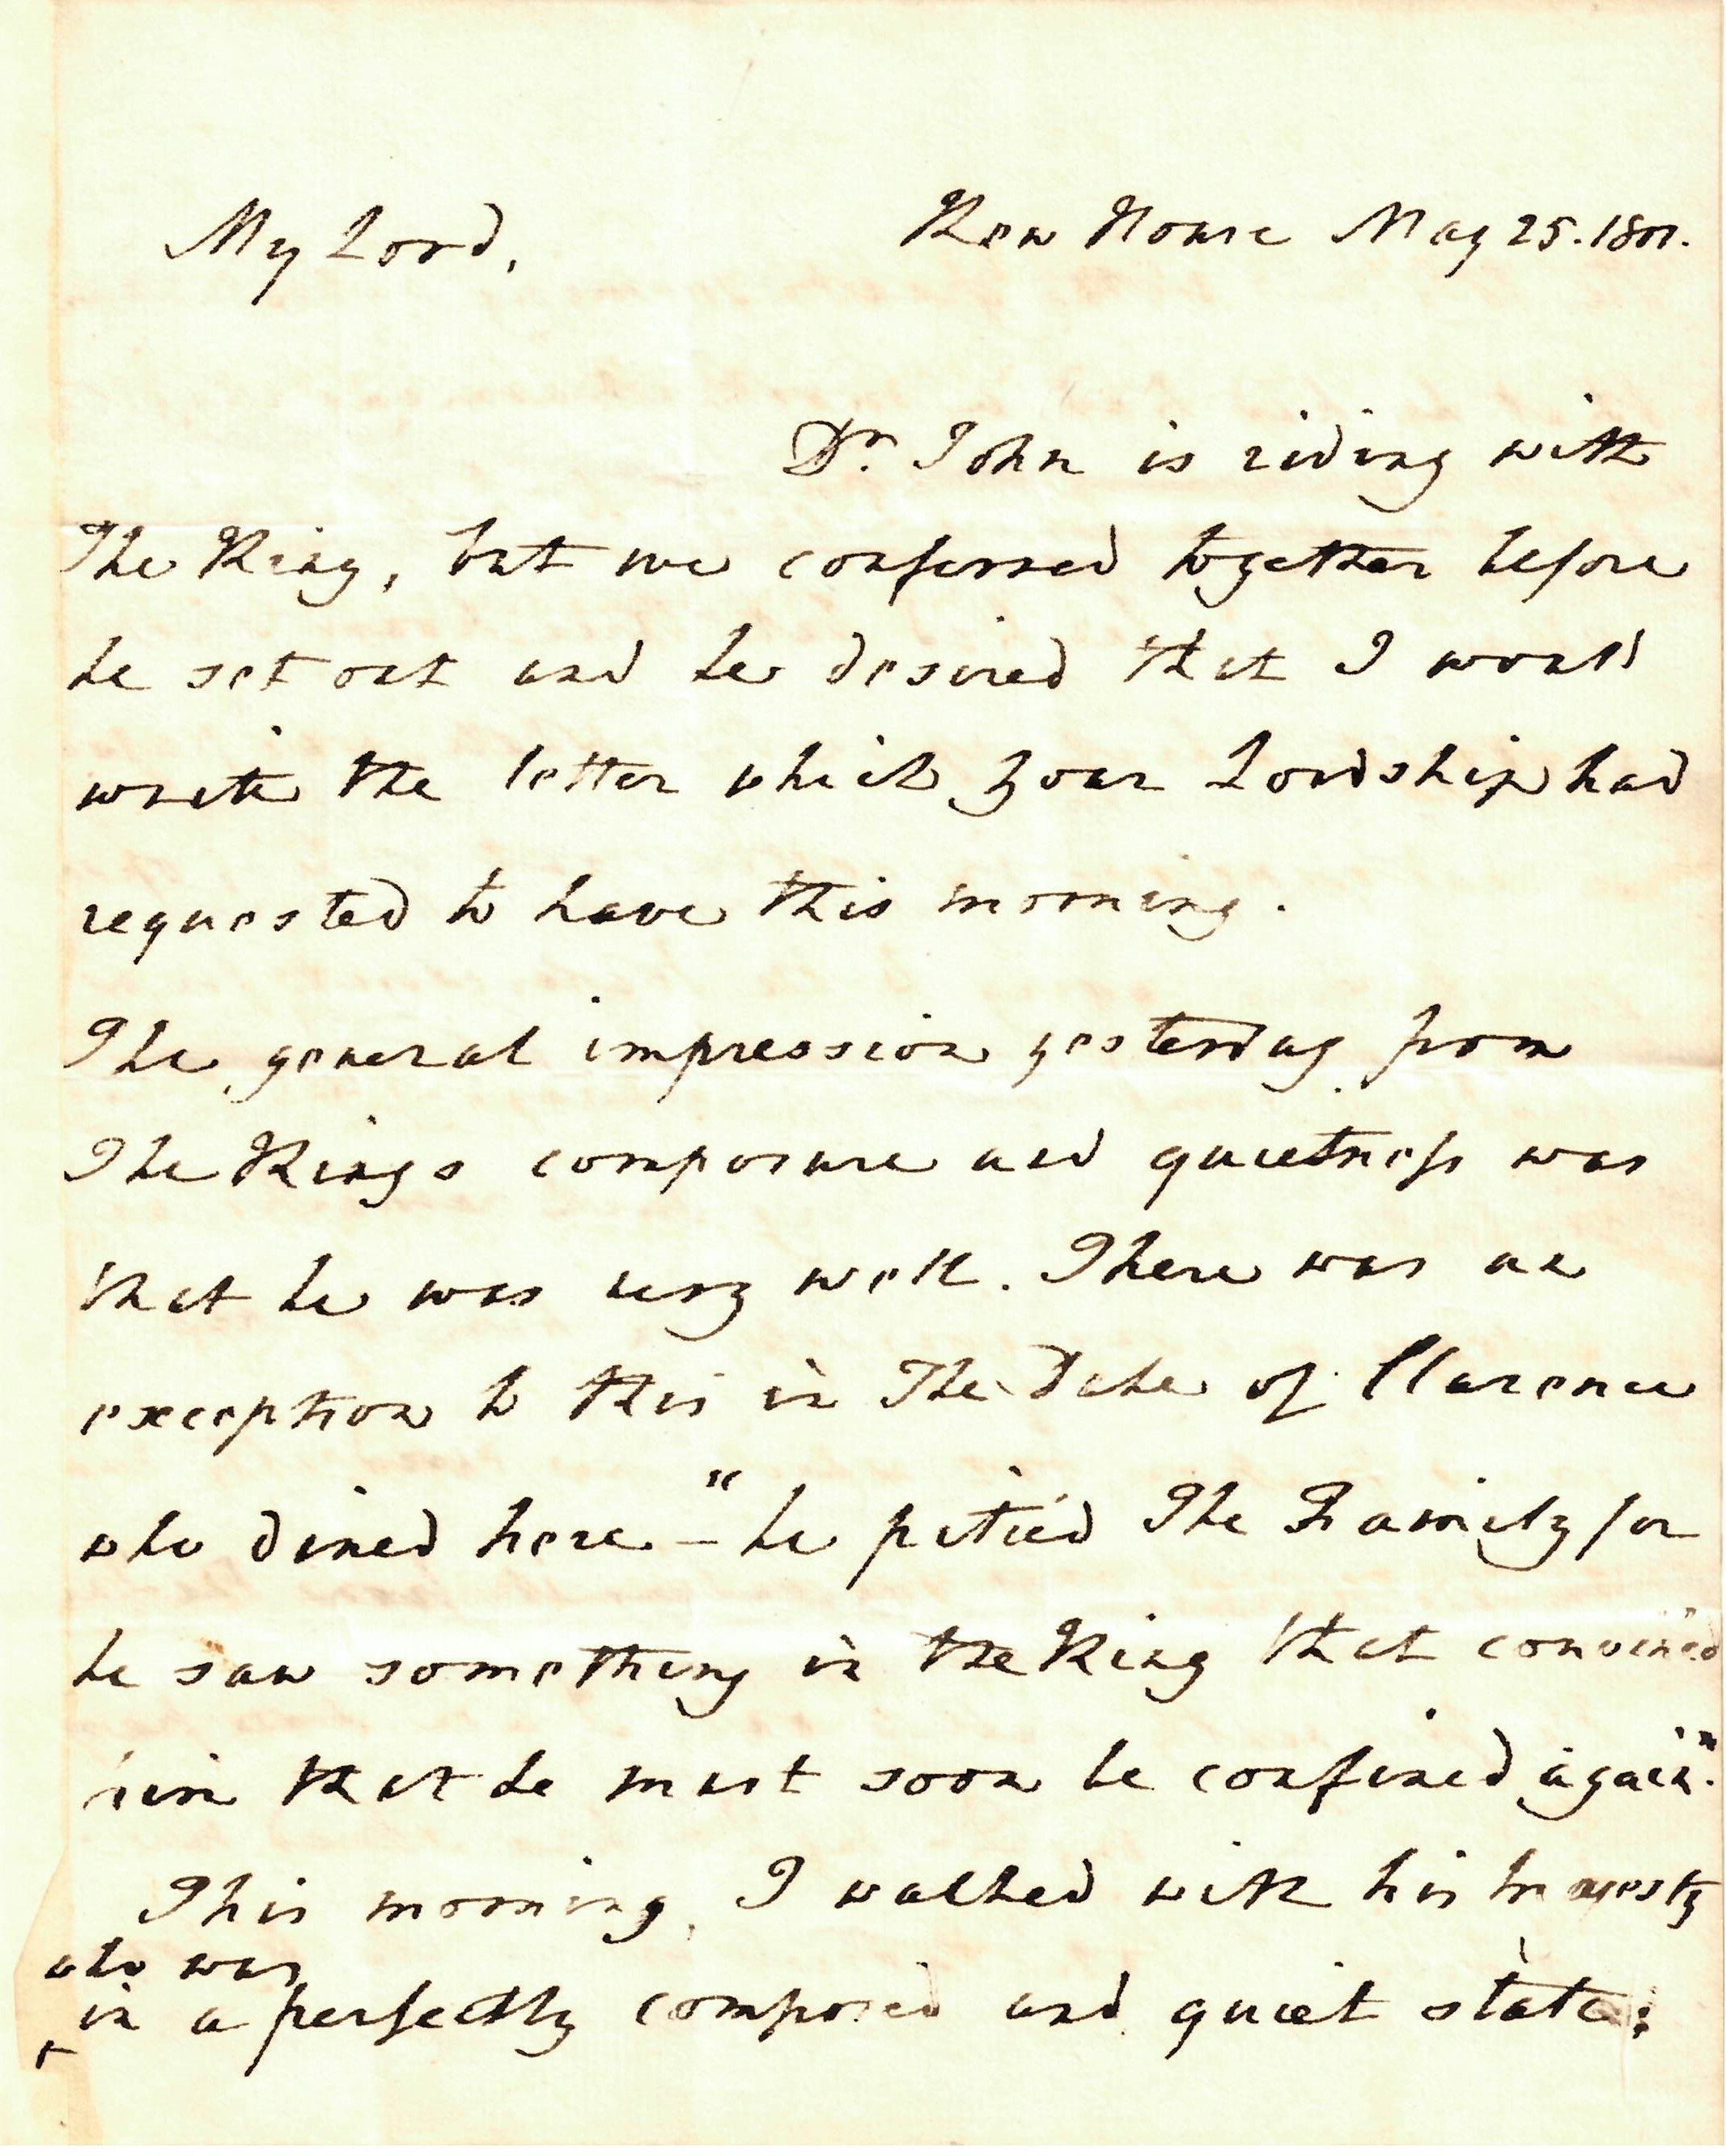 Detail of handwritten letter from Thomas Willis to John Scott.